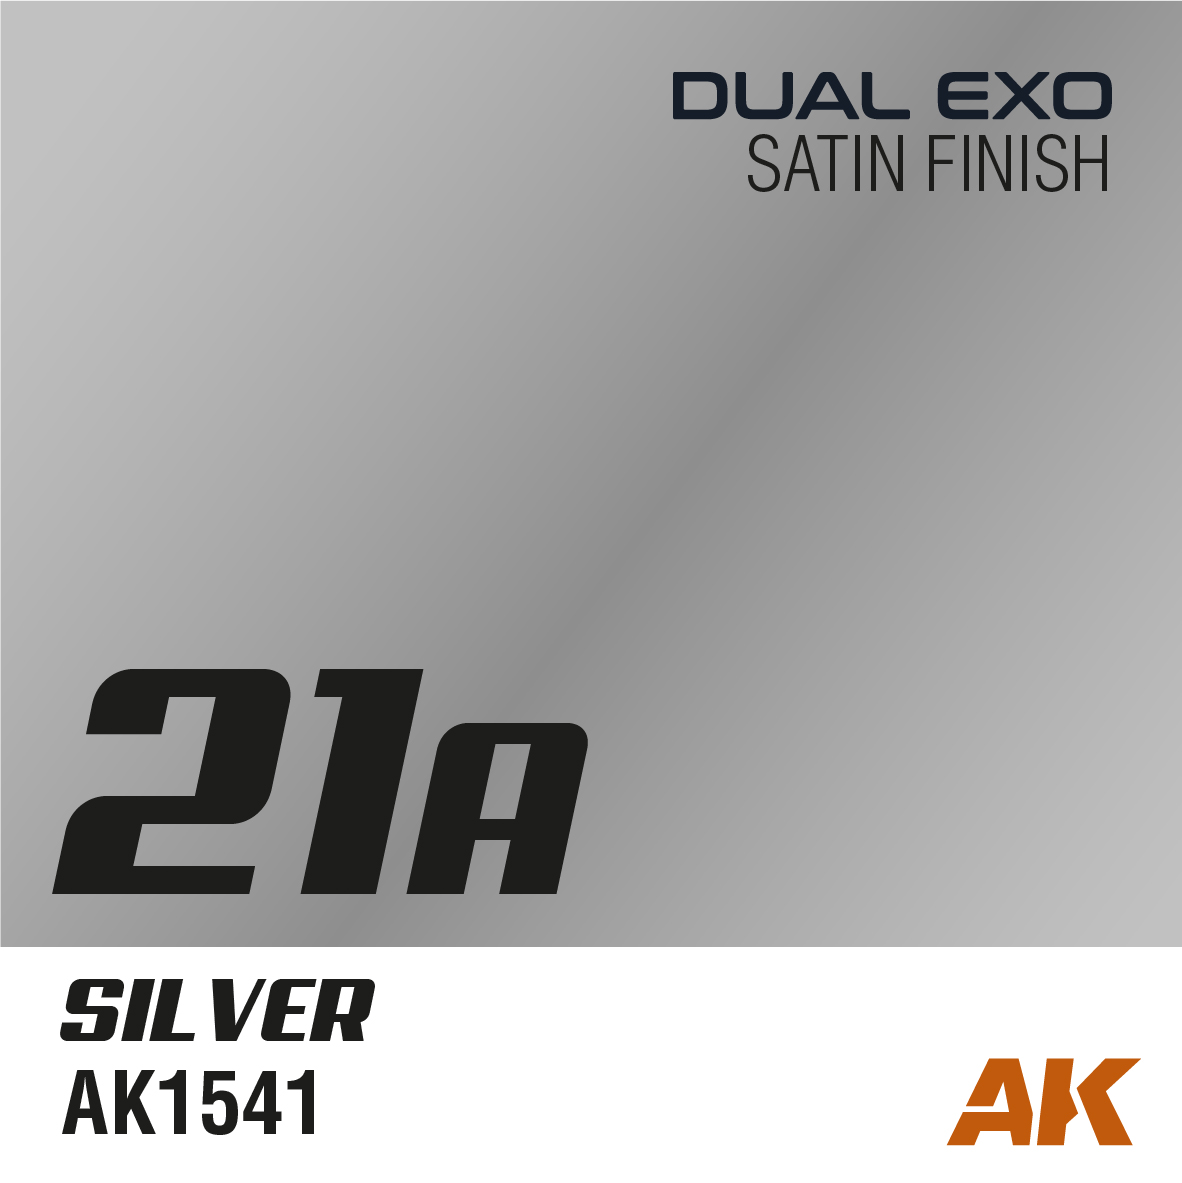 Dual Exo 21A - Silver